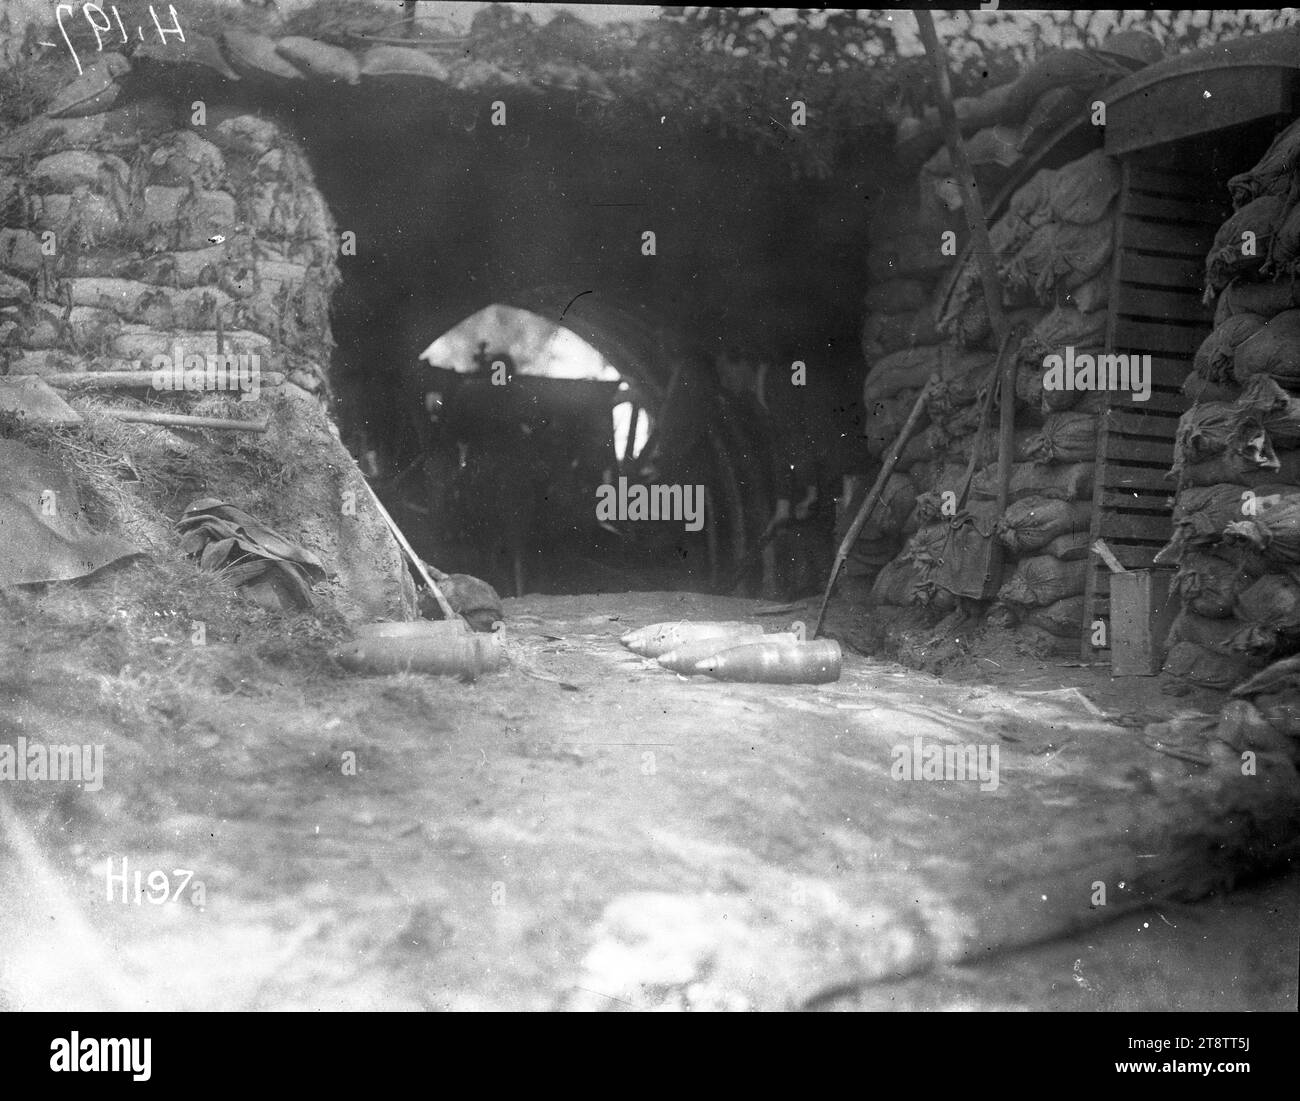 New Zealand Howitzer Battery - die Pistolengrube, Rückansicht einer Pistoleneinlage der New Zealand Howitzer Battery. Zeigt einen Sandsacktunnel mit Schalen auf dem Boden. Foto vom 18. August 1917 Stockfoto